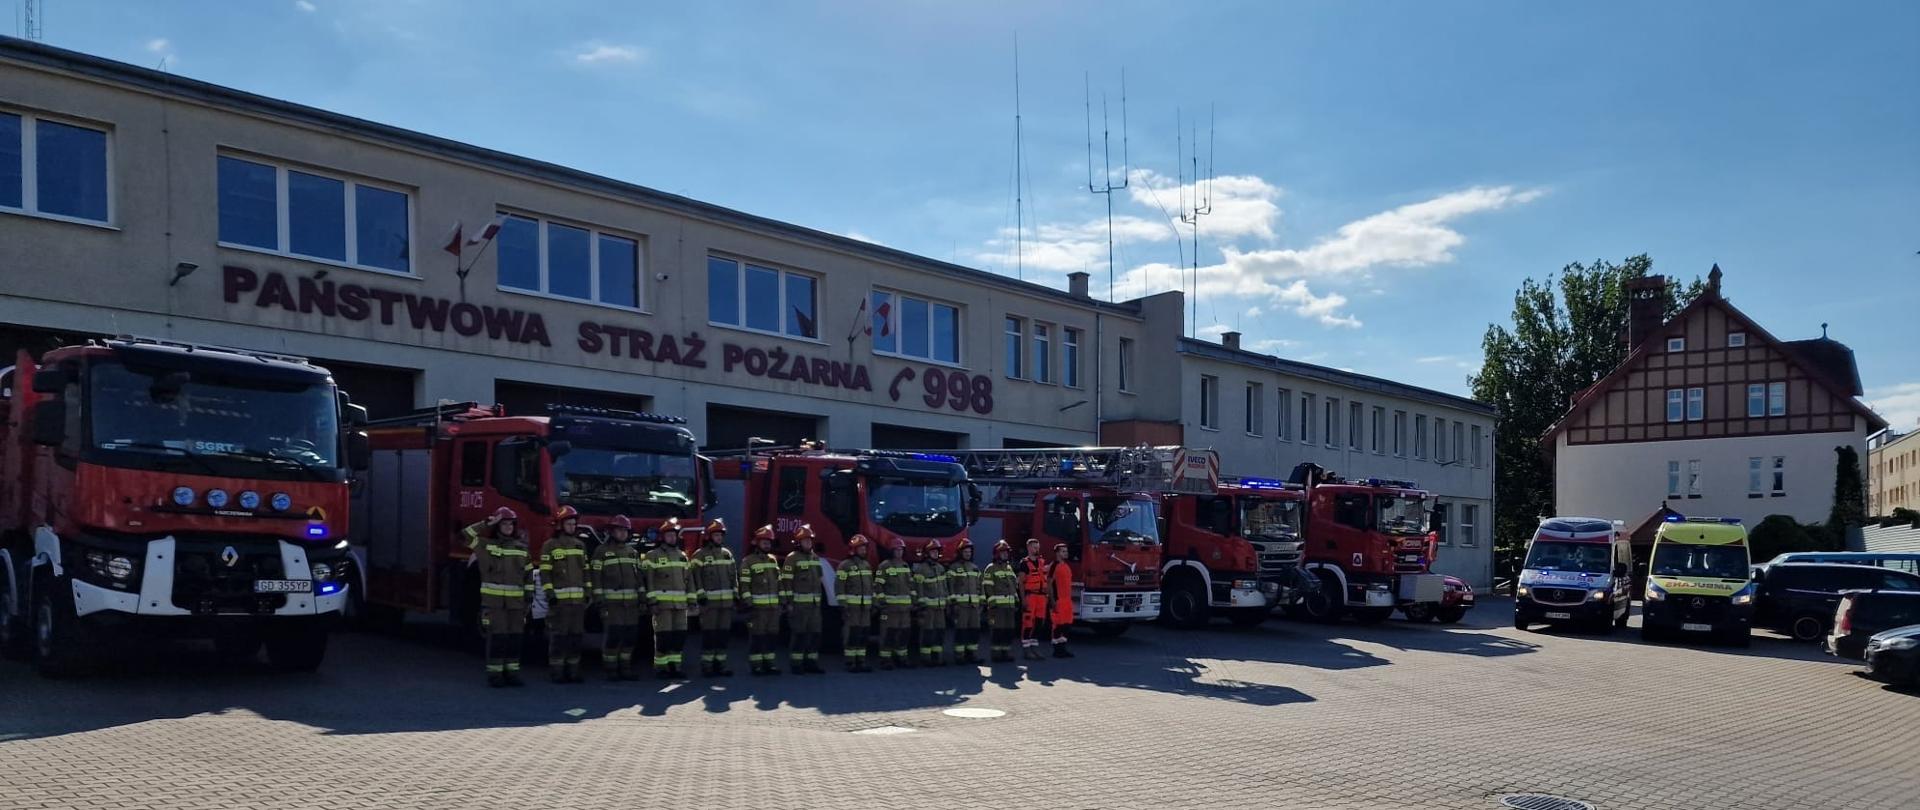 Strażacy z JRG 1 oddają hołd powstańcom warszawskim - zbiórka przed pojazdami ratowniczymi